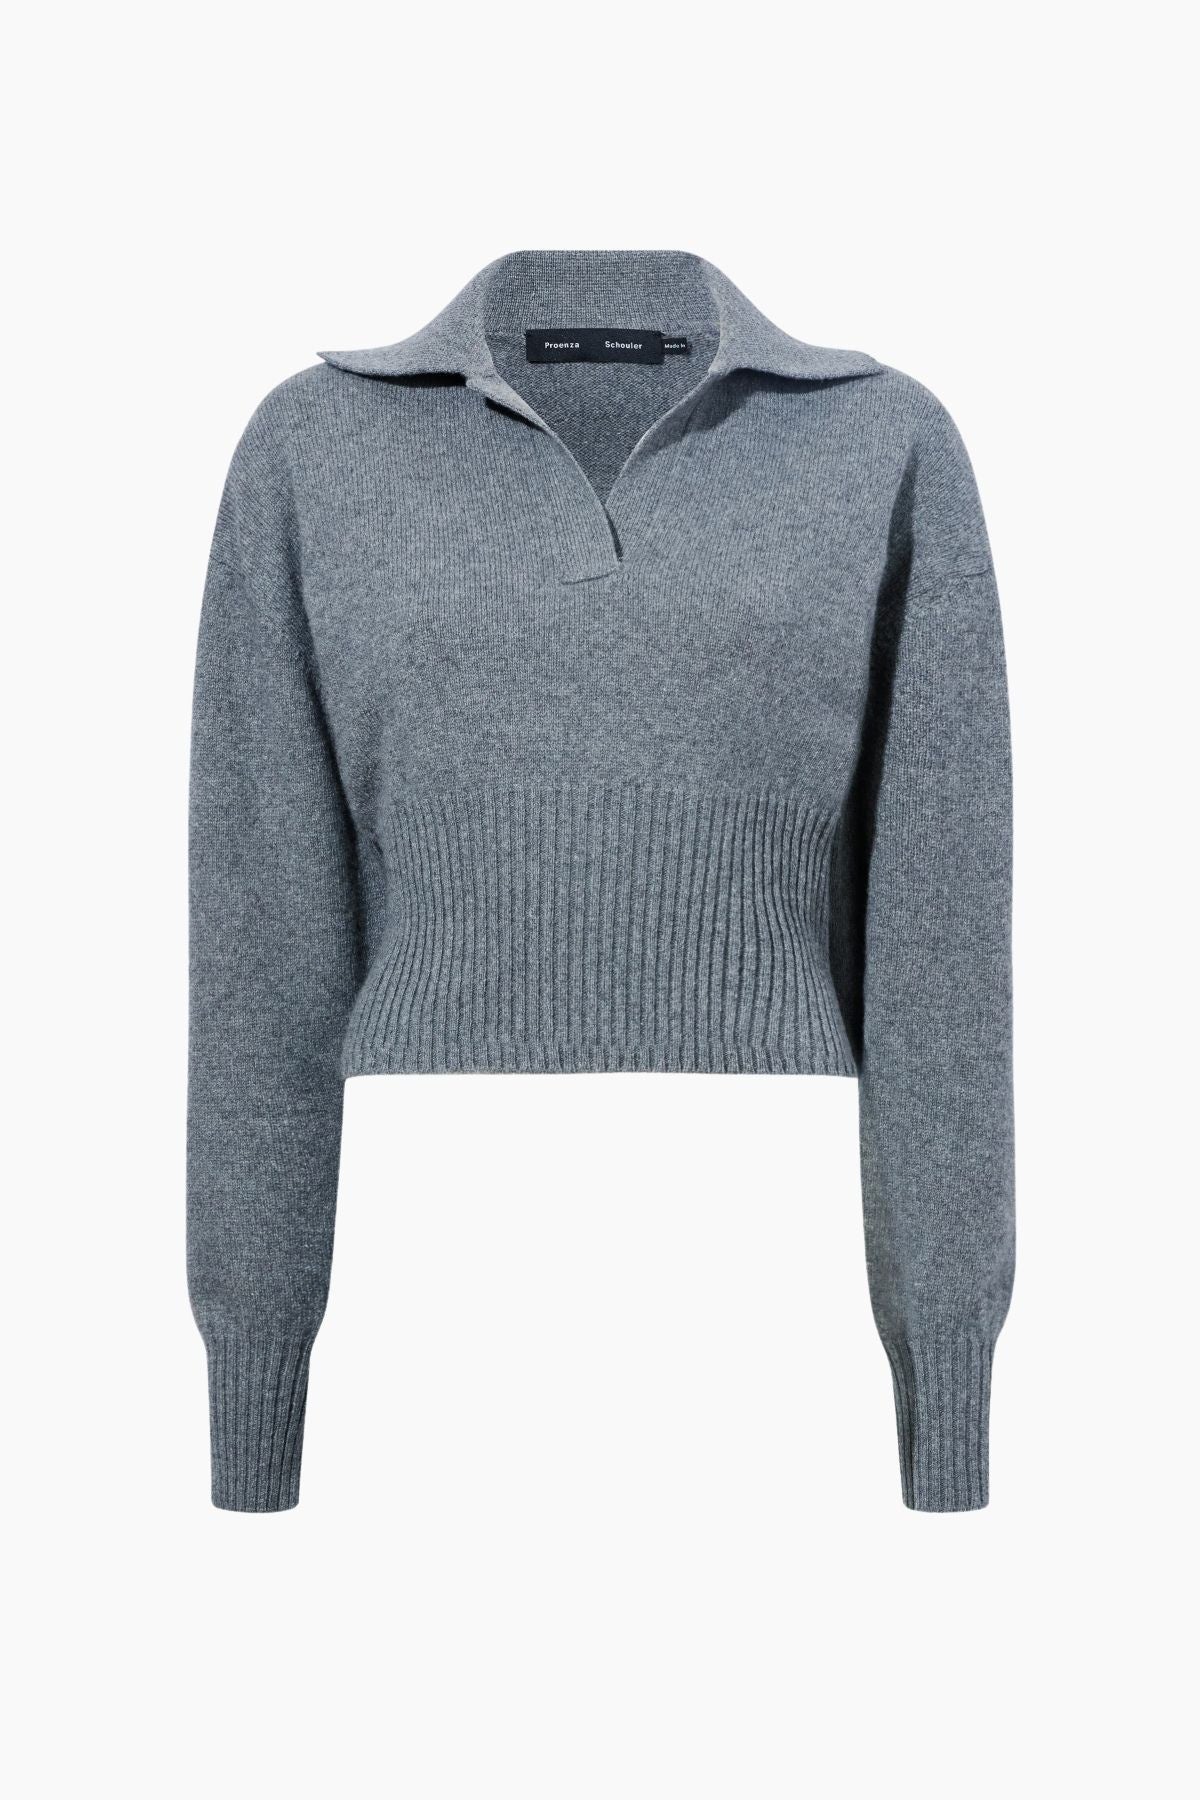 Proenza Schouler Jeanne Cashmere Knit Sweater - Grey Melange